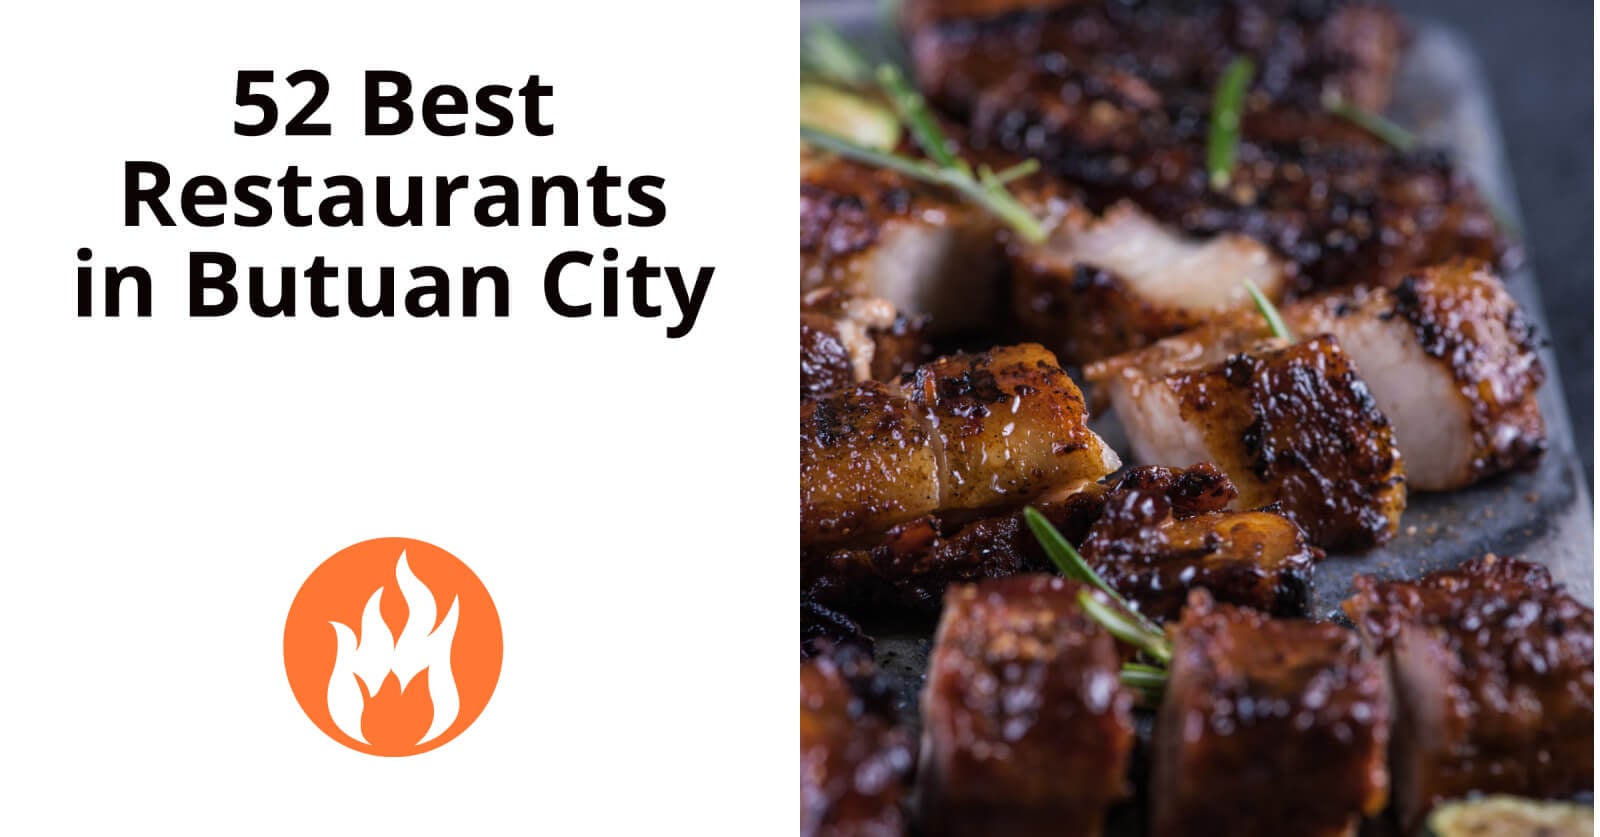 52 best restaurants in butuan city.